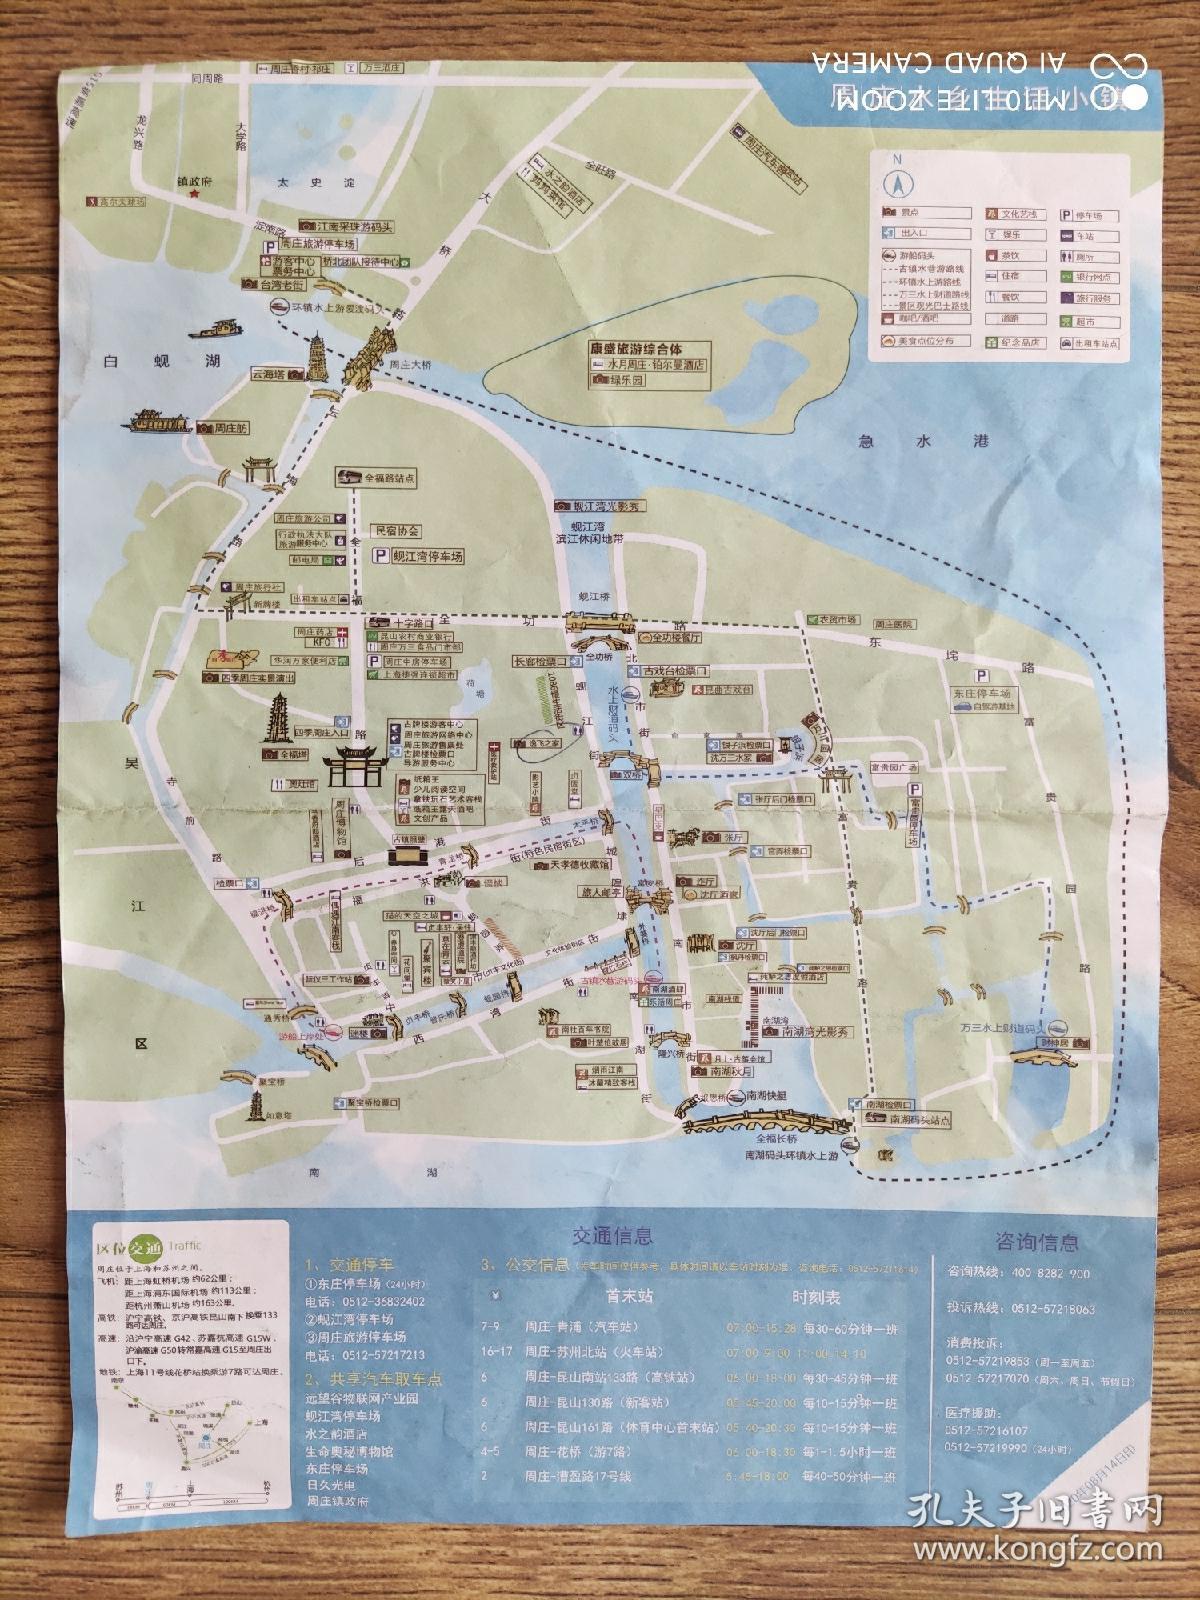 【旧地图】 周庄水乡生活小镇地图   16开  2020年版